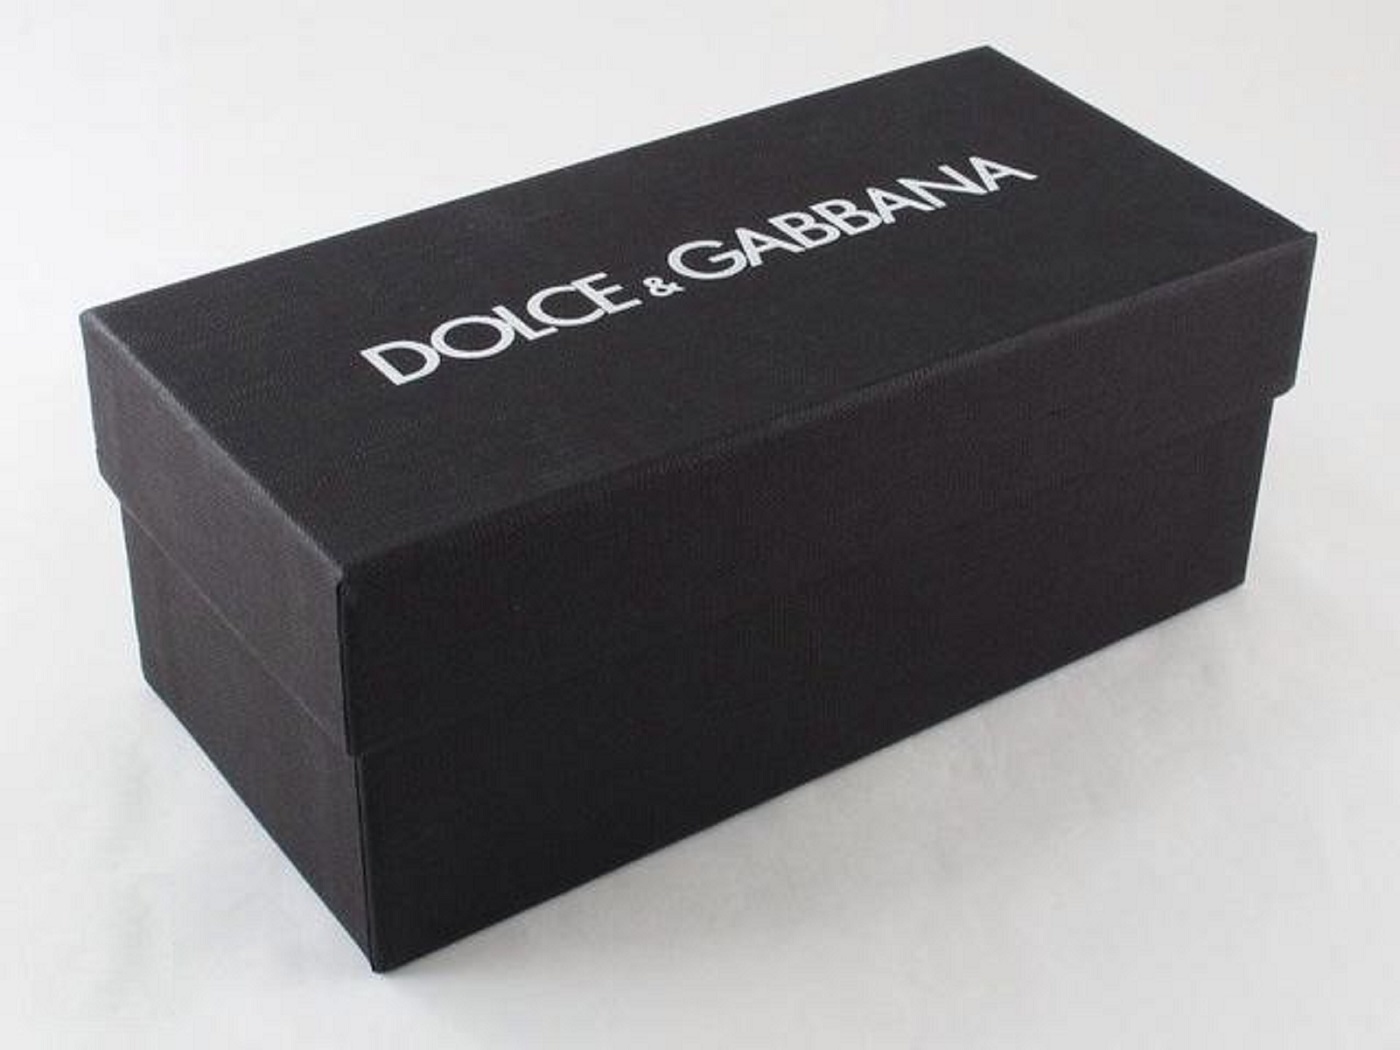 Dolce & Gabbana occhiali da sole: riconoscere gli originali dai falsi - Controllate la confezione e il portaocchiali